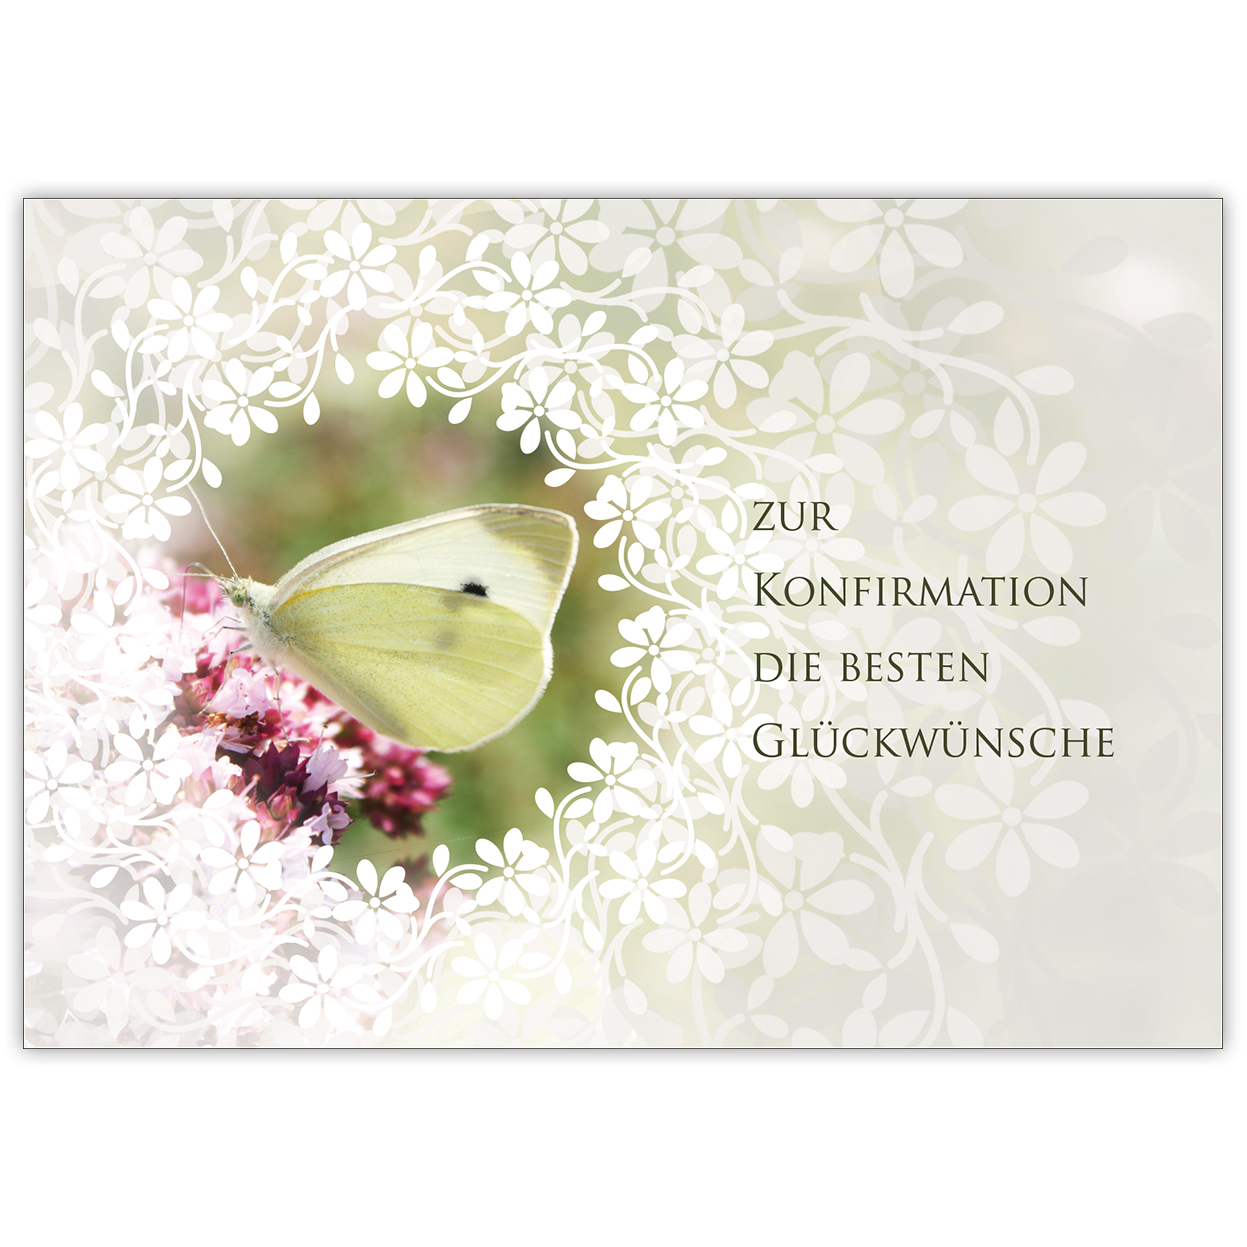 Traumhafte Glückwunsch Karte mit Schmetterling und Blüten "Zur Konfirmation die besten Glückwünsche"